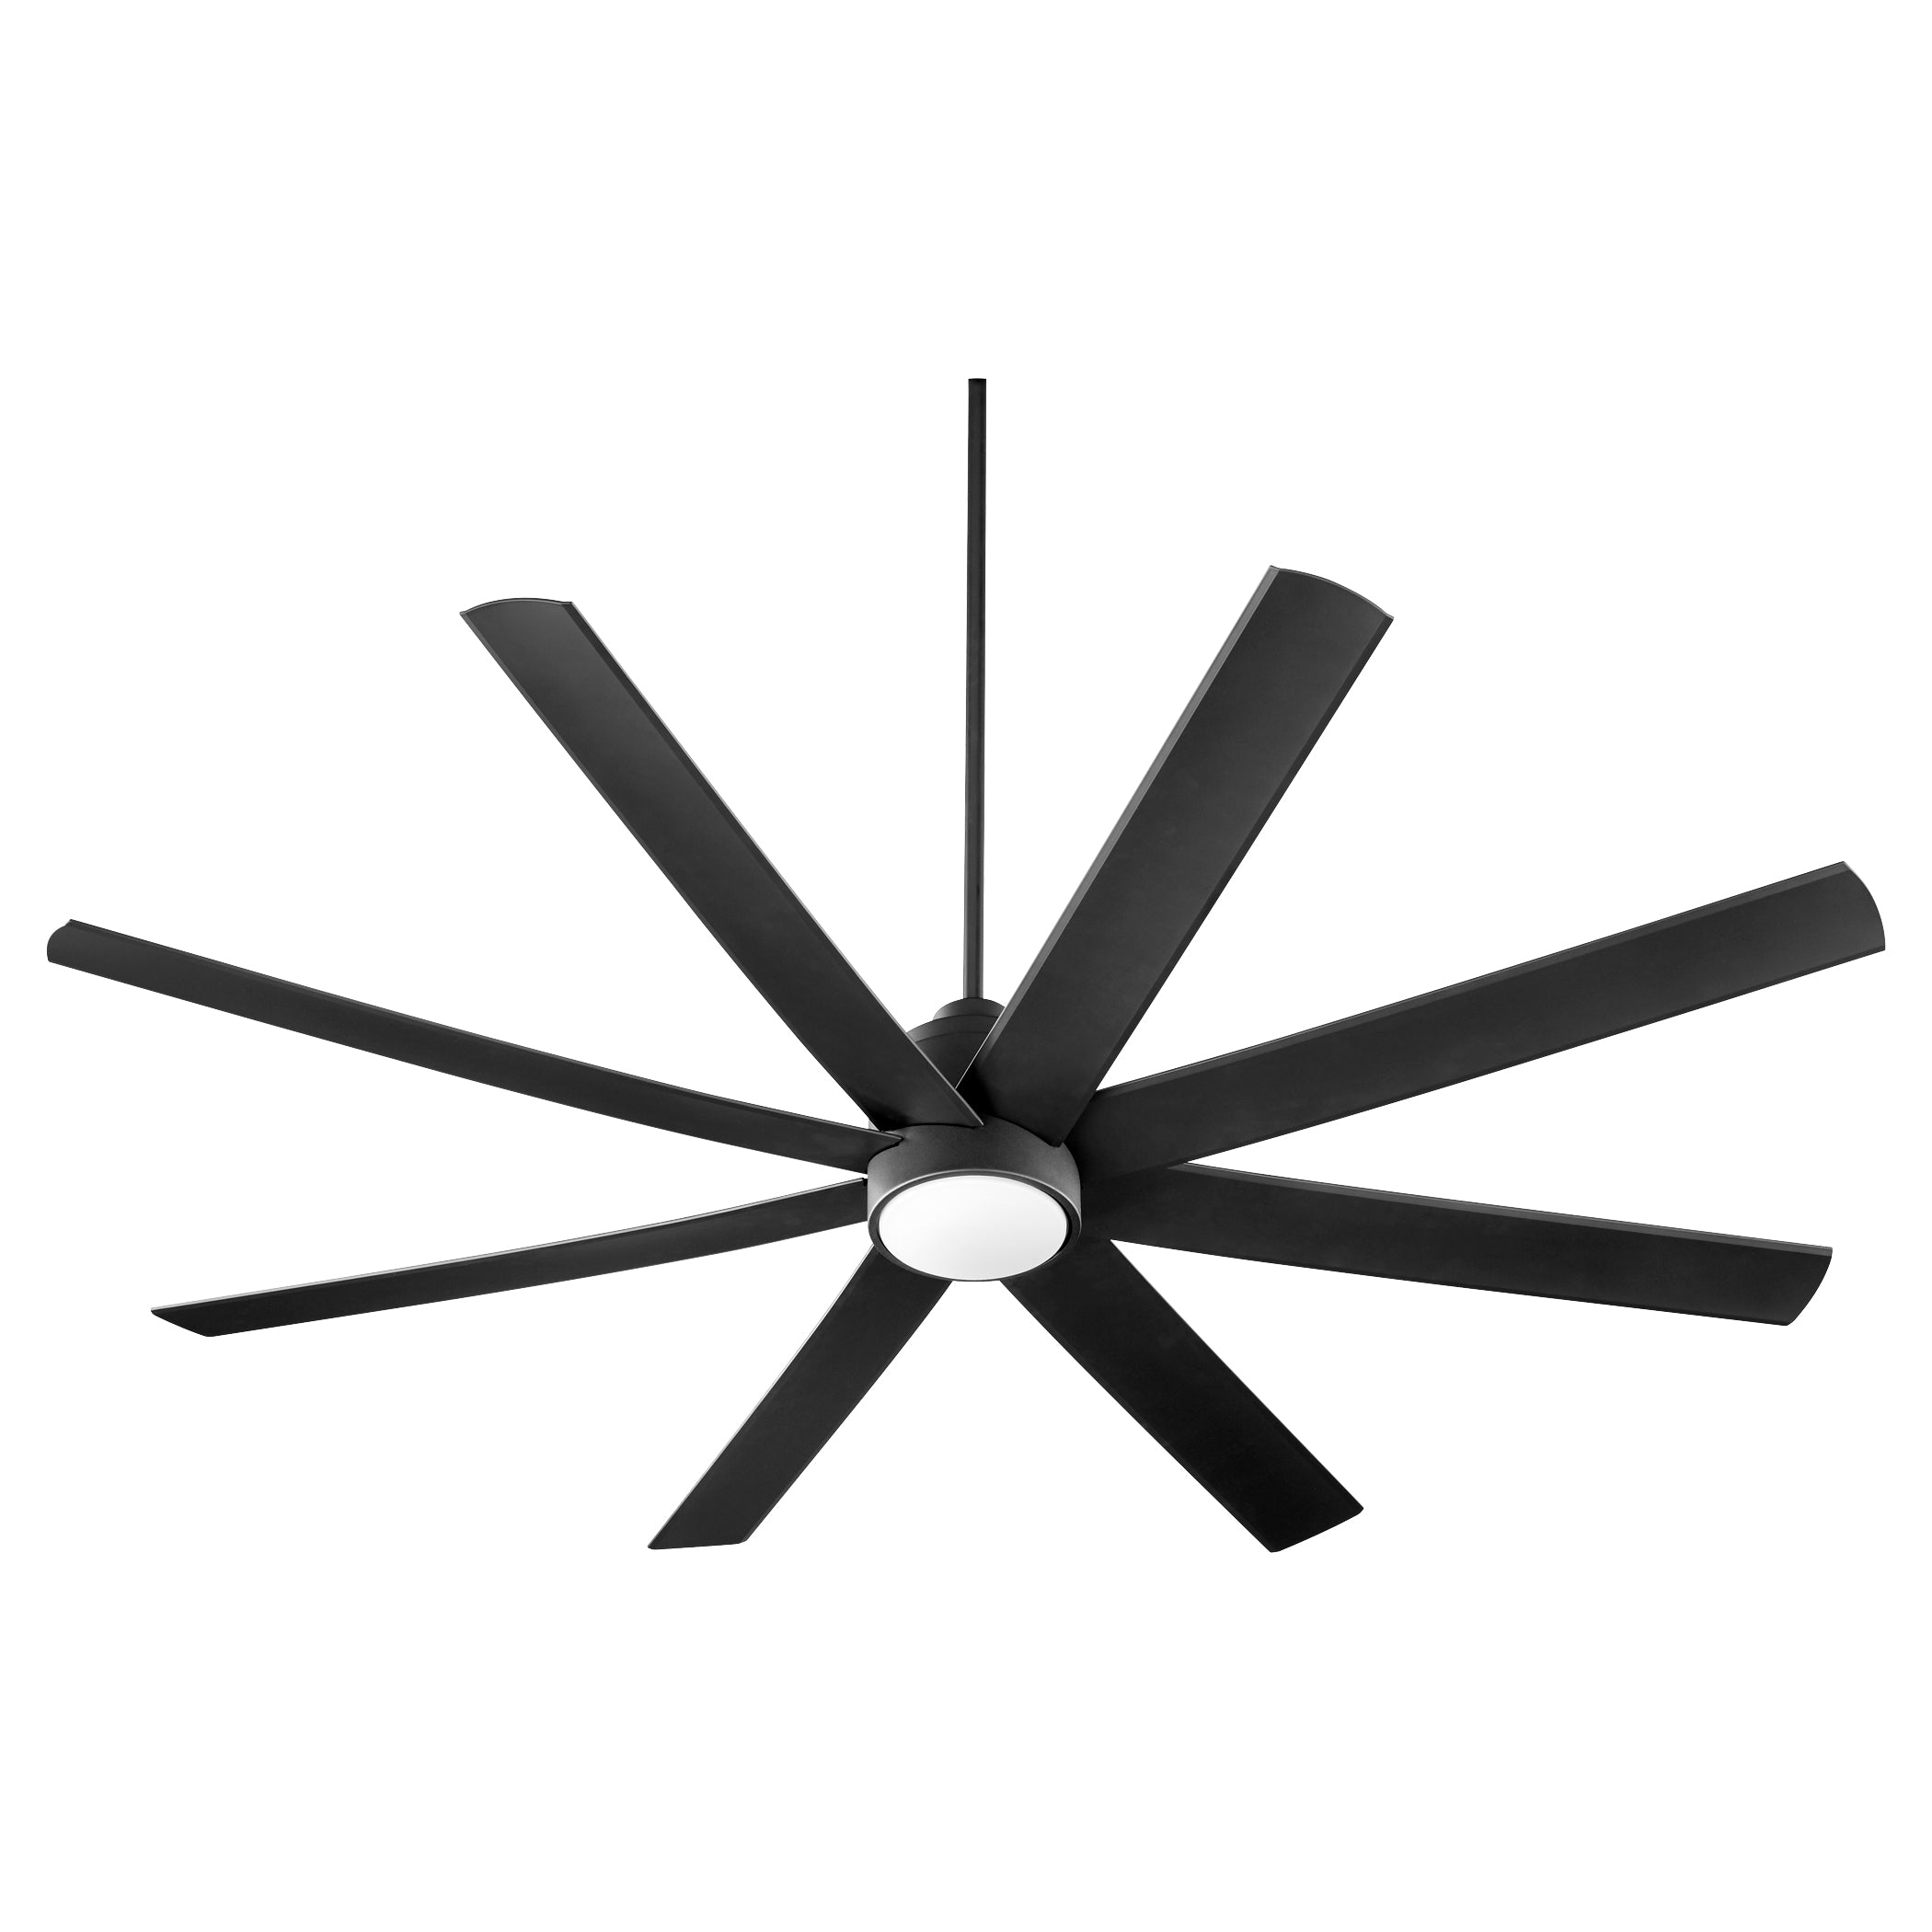 Oxygen Cosmo 3-100-15 Ceiling Fan 70 Inch, 8 Blade - Black, Matte Black